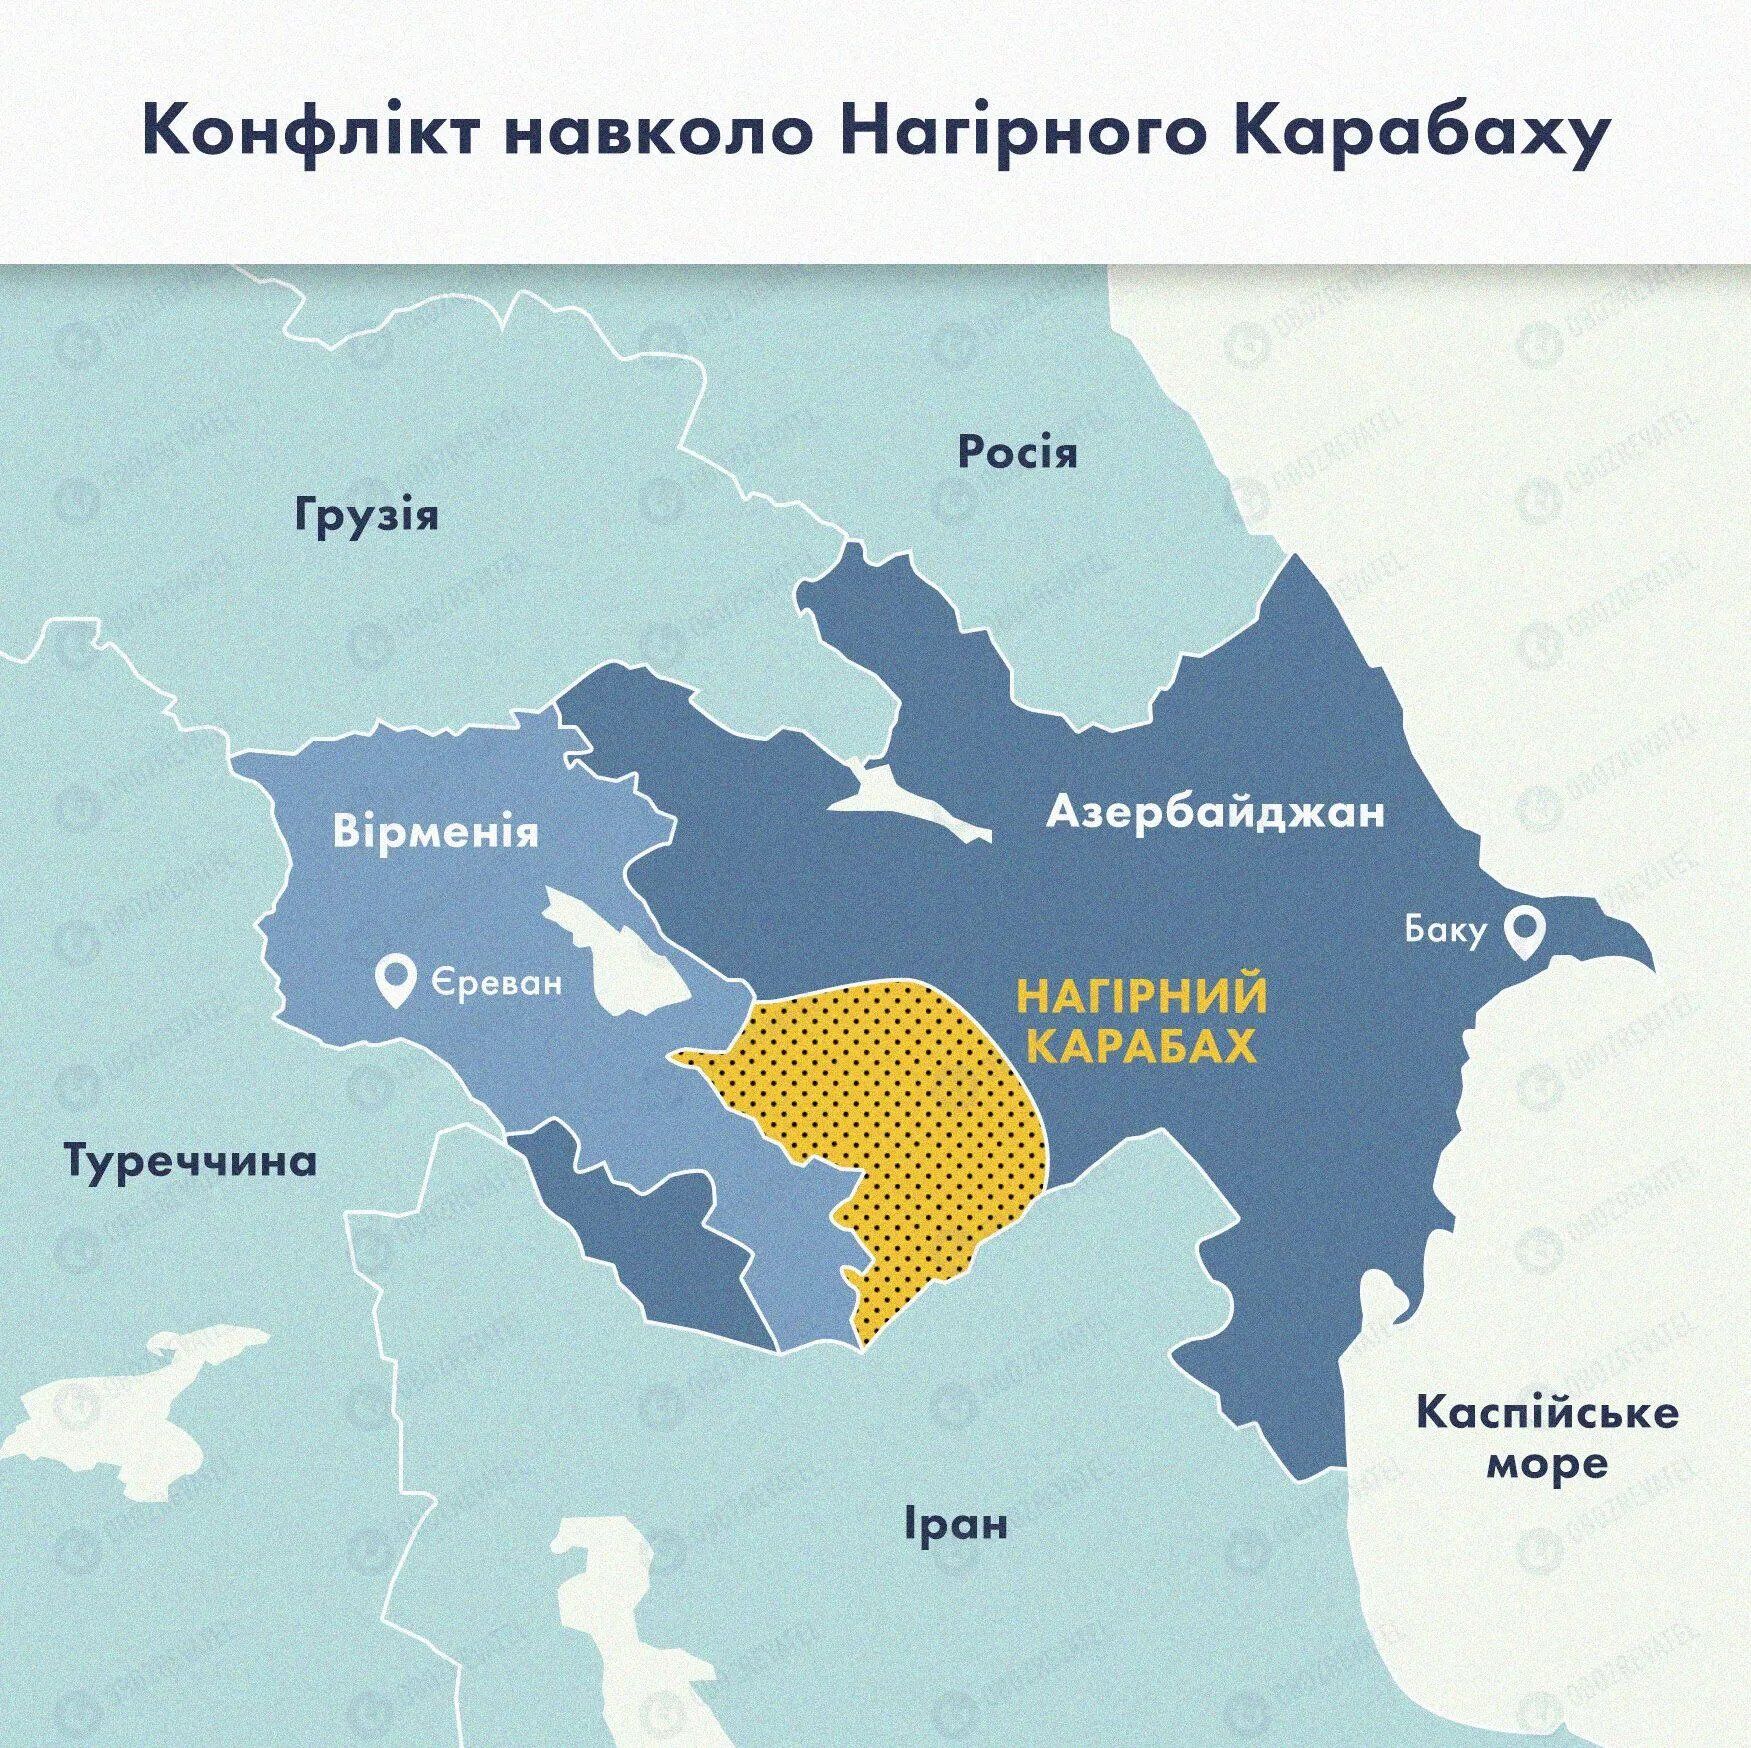 Карта относительно конфликта в Нагорном Карабахе